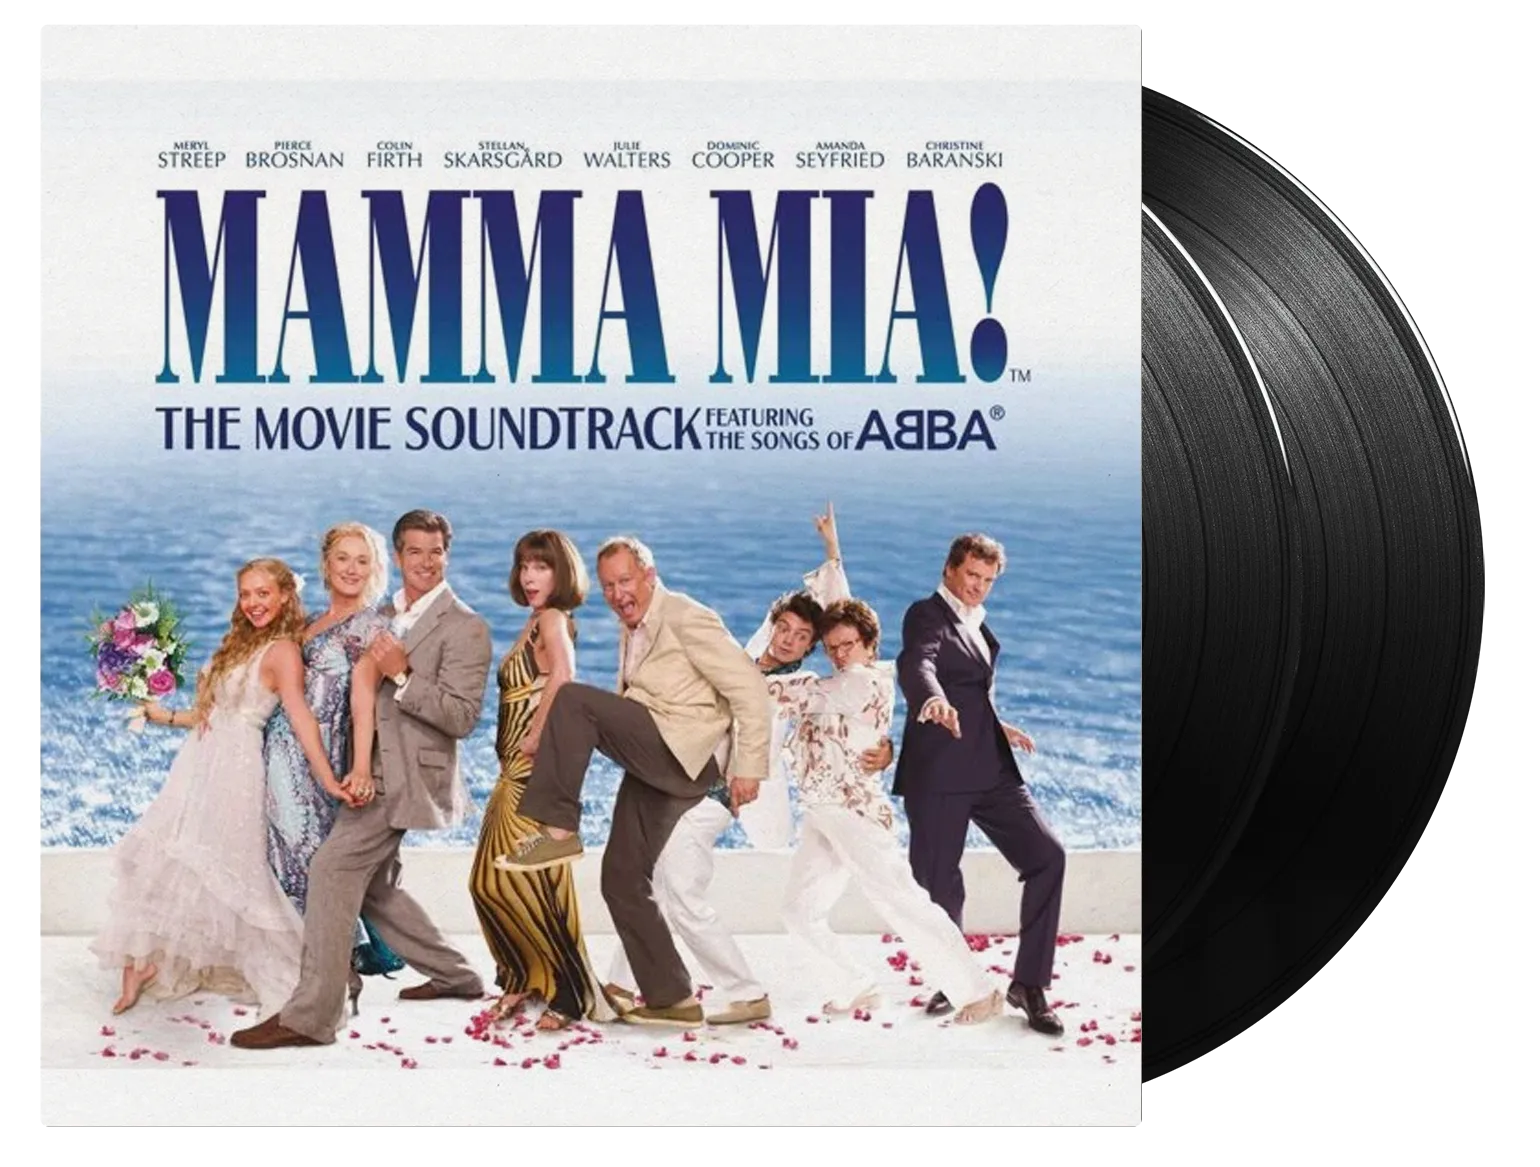 Mamma Mia (From 'Mamma Mia!' Original Motion Picture Soundtrack